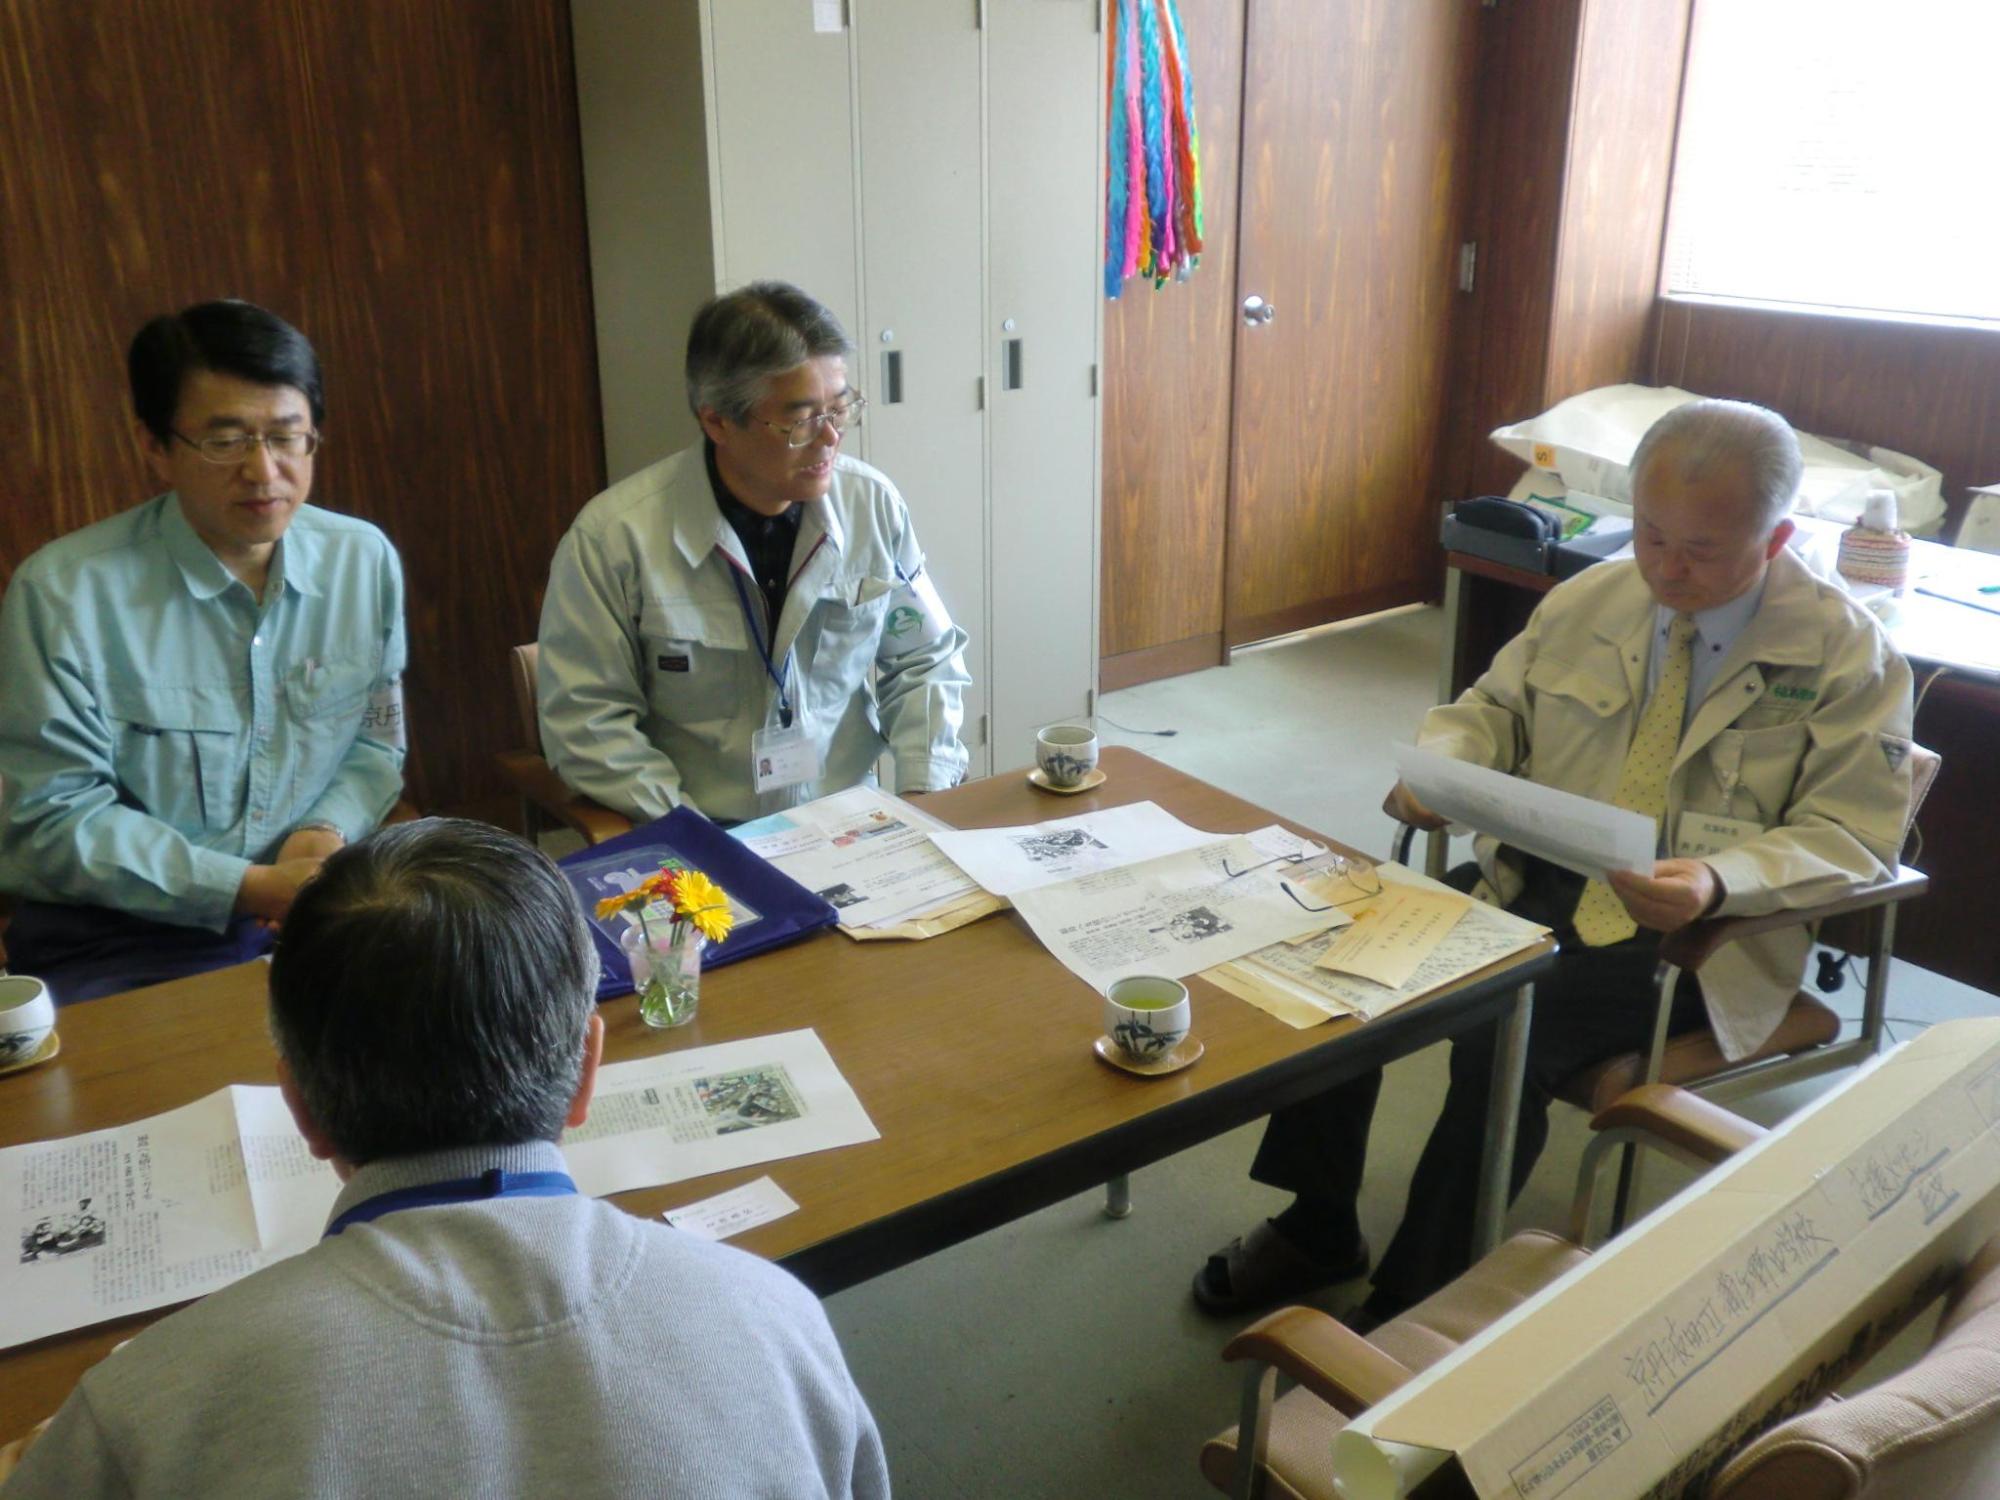 井戸川町長から避難所の状況などを聞く調査団の団員の写真